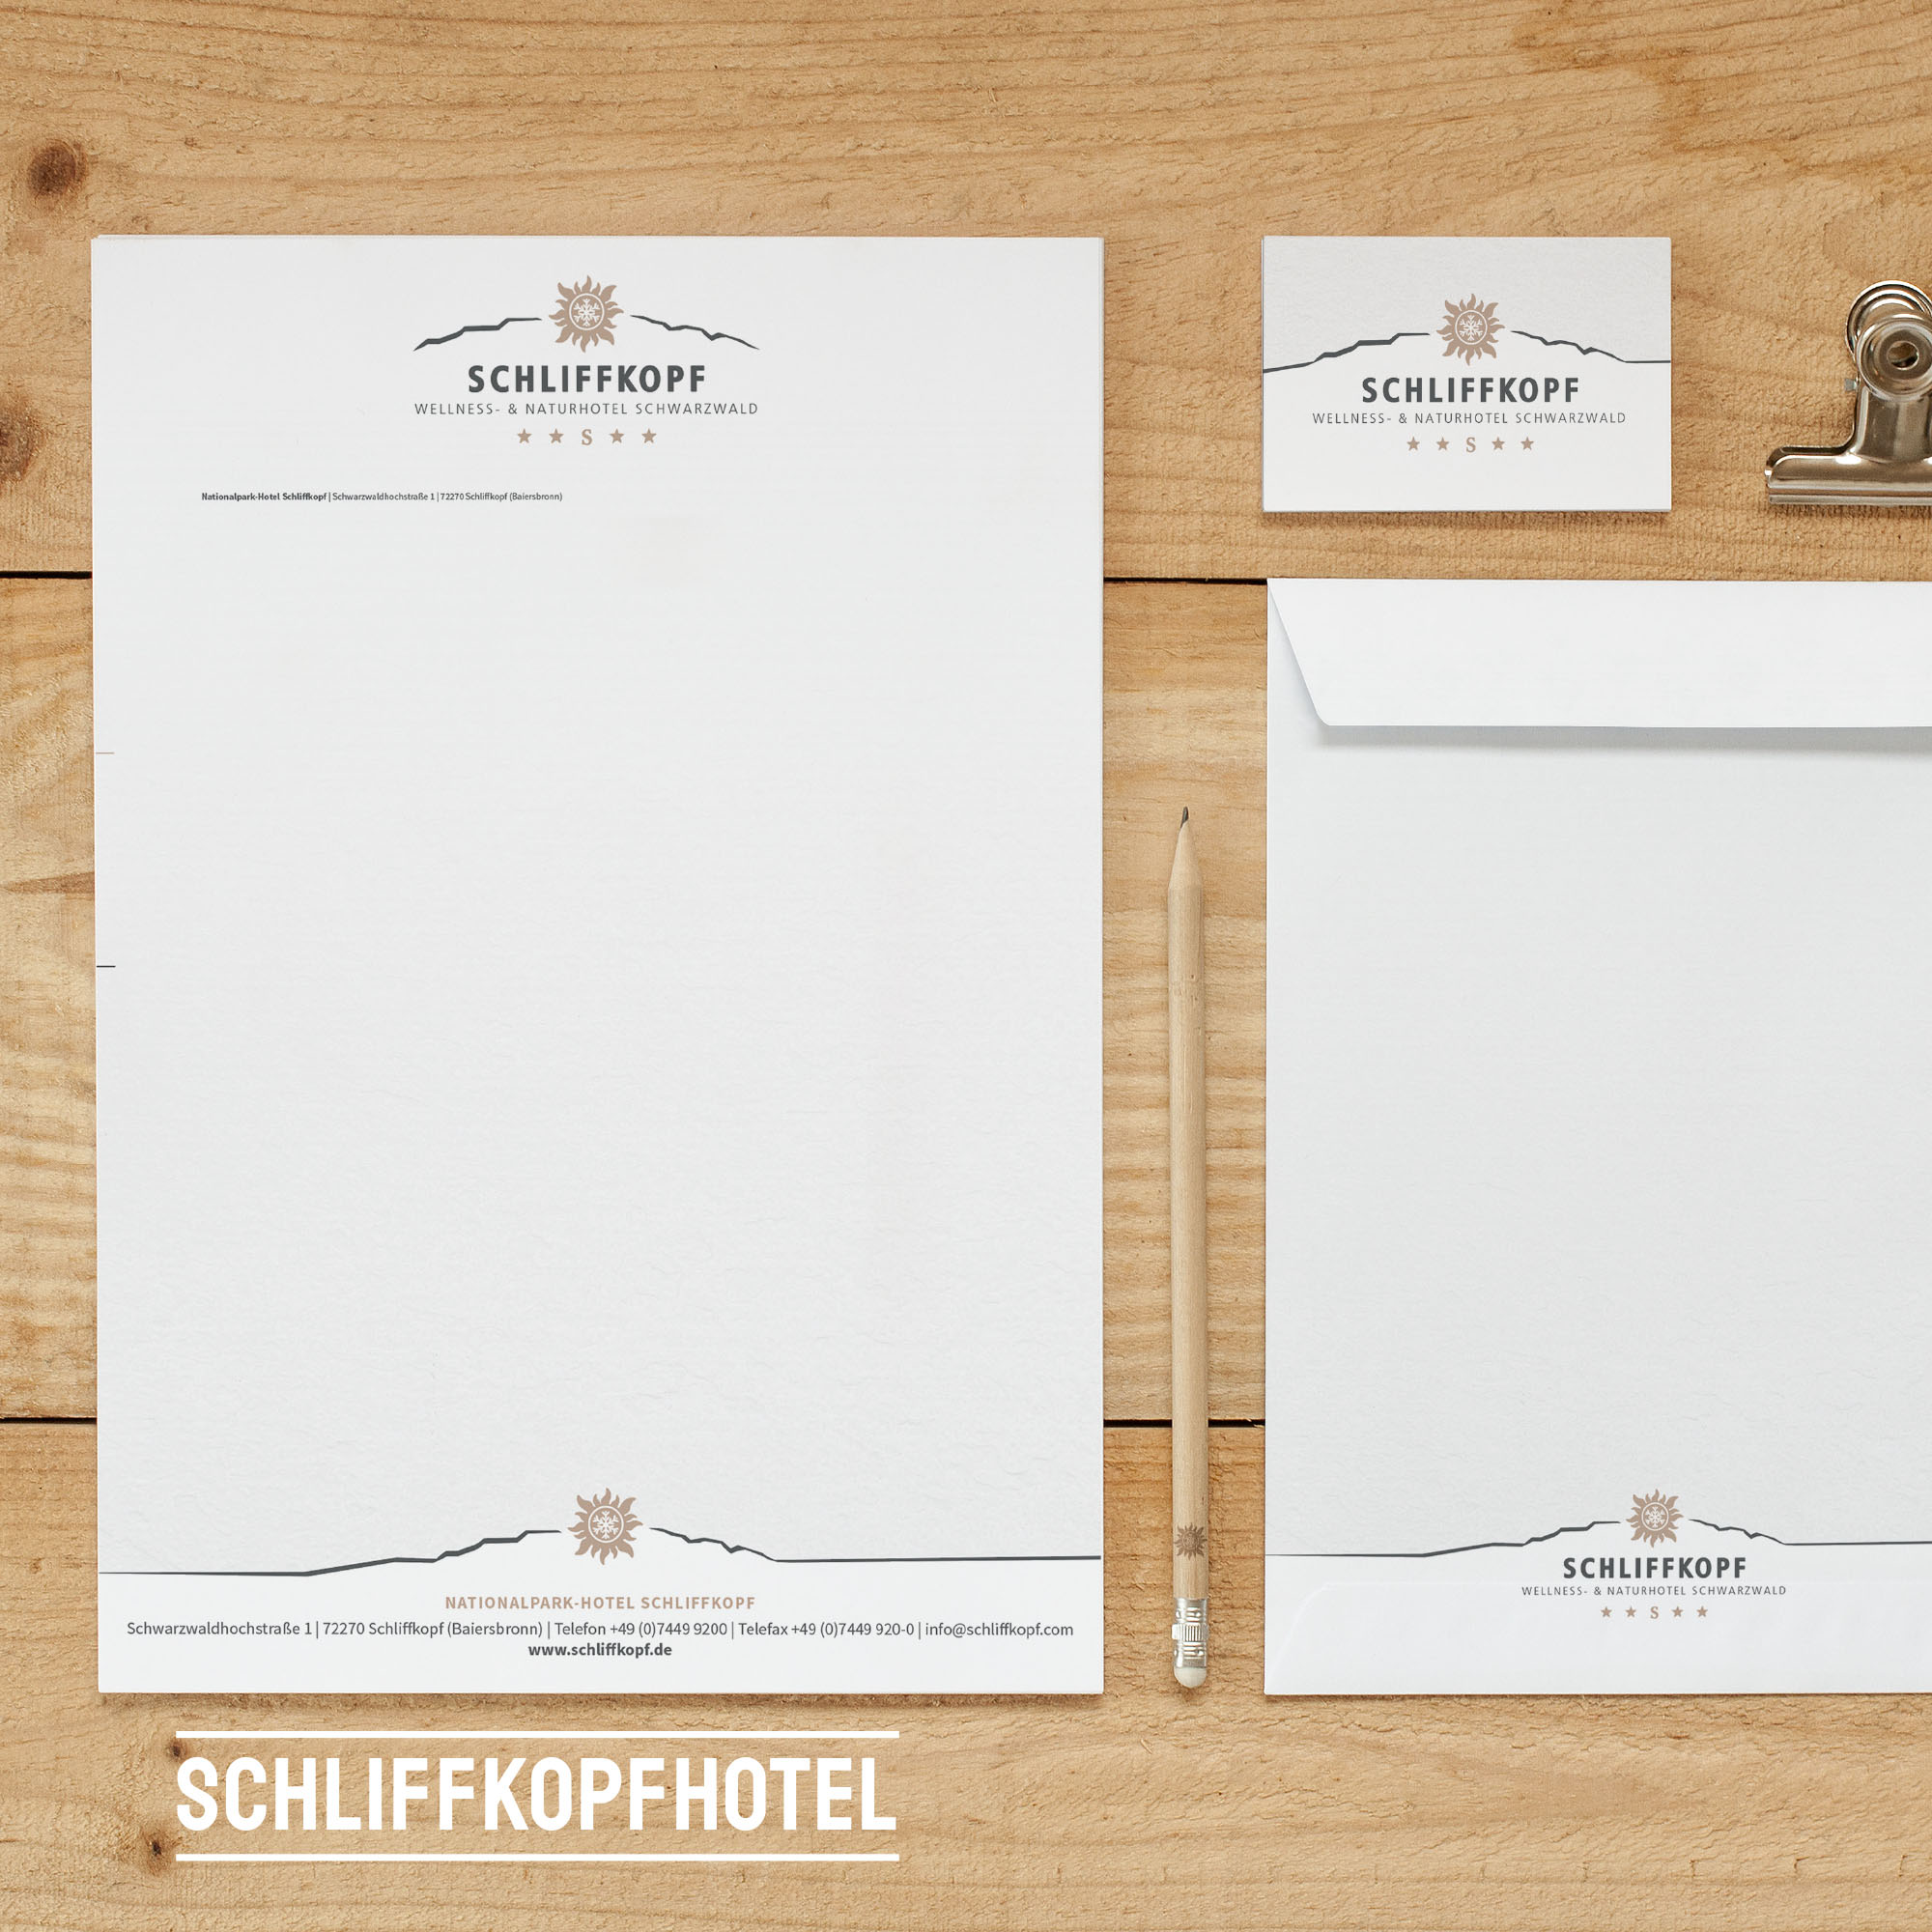 Schliffkopf Werbeartikel Projekte Kunden, Neuland design Branddesign Print & Websiten